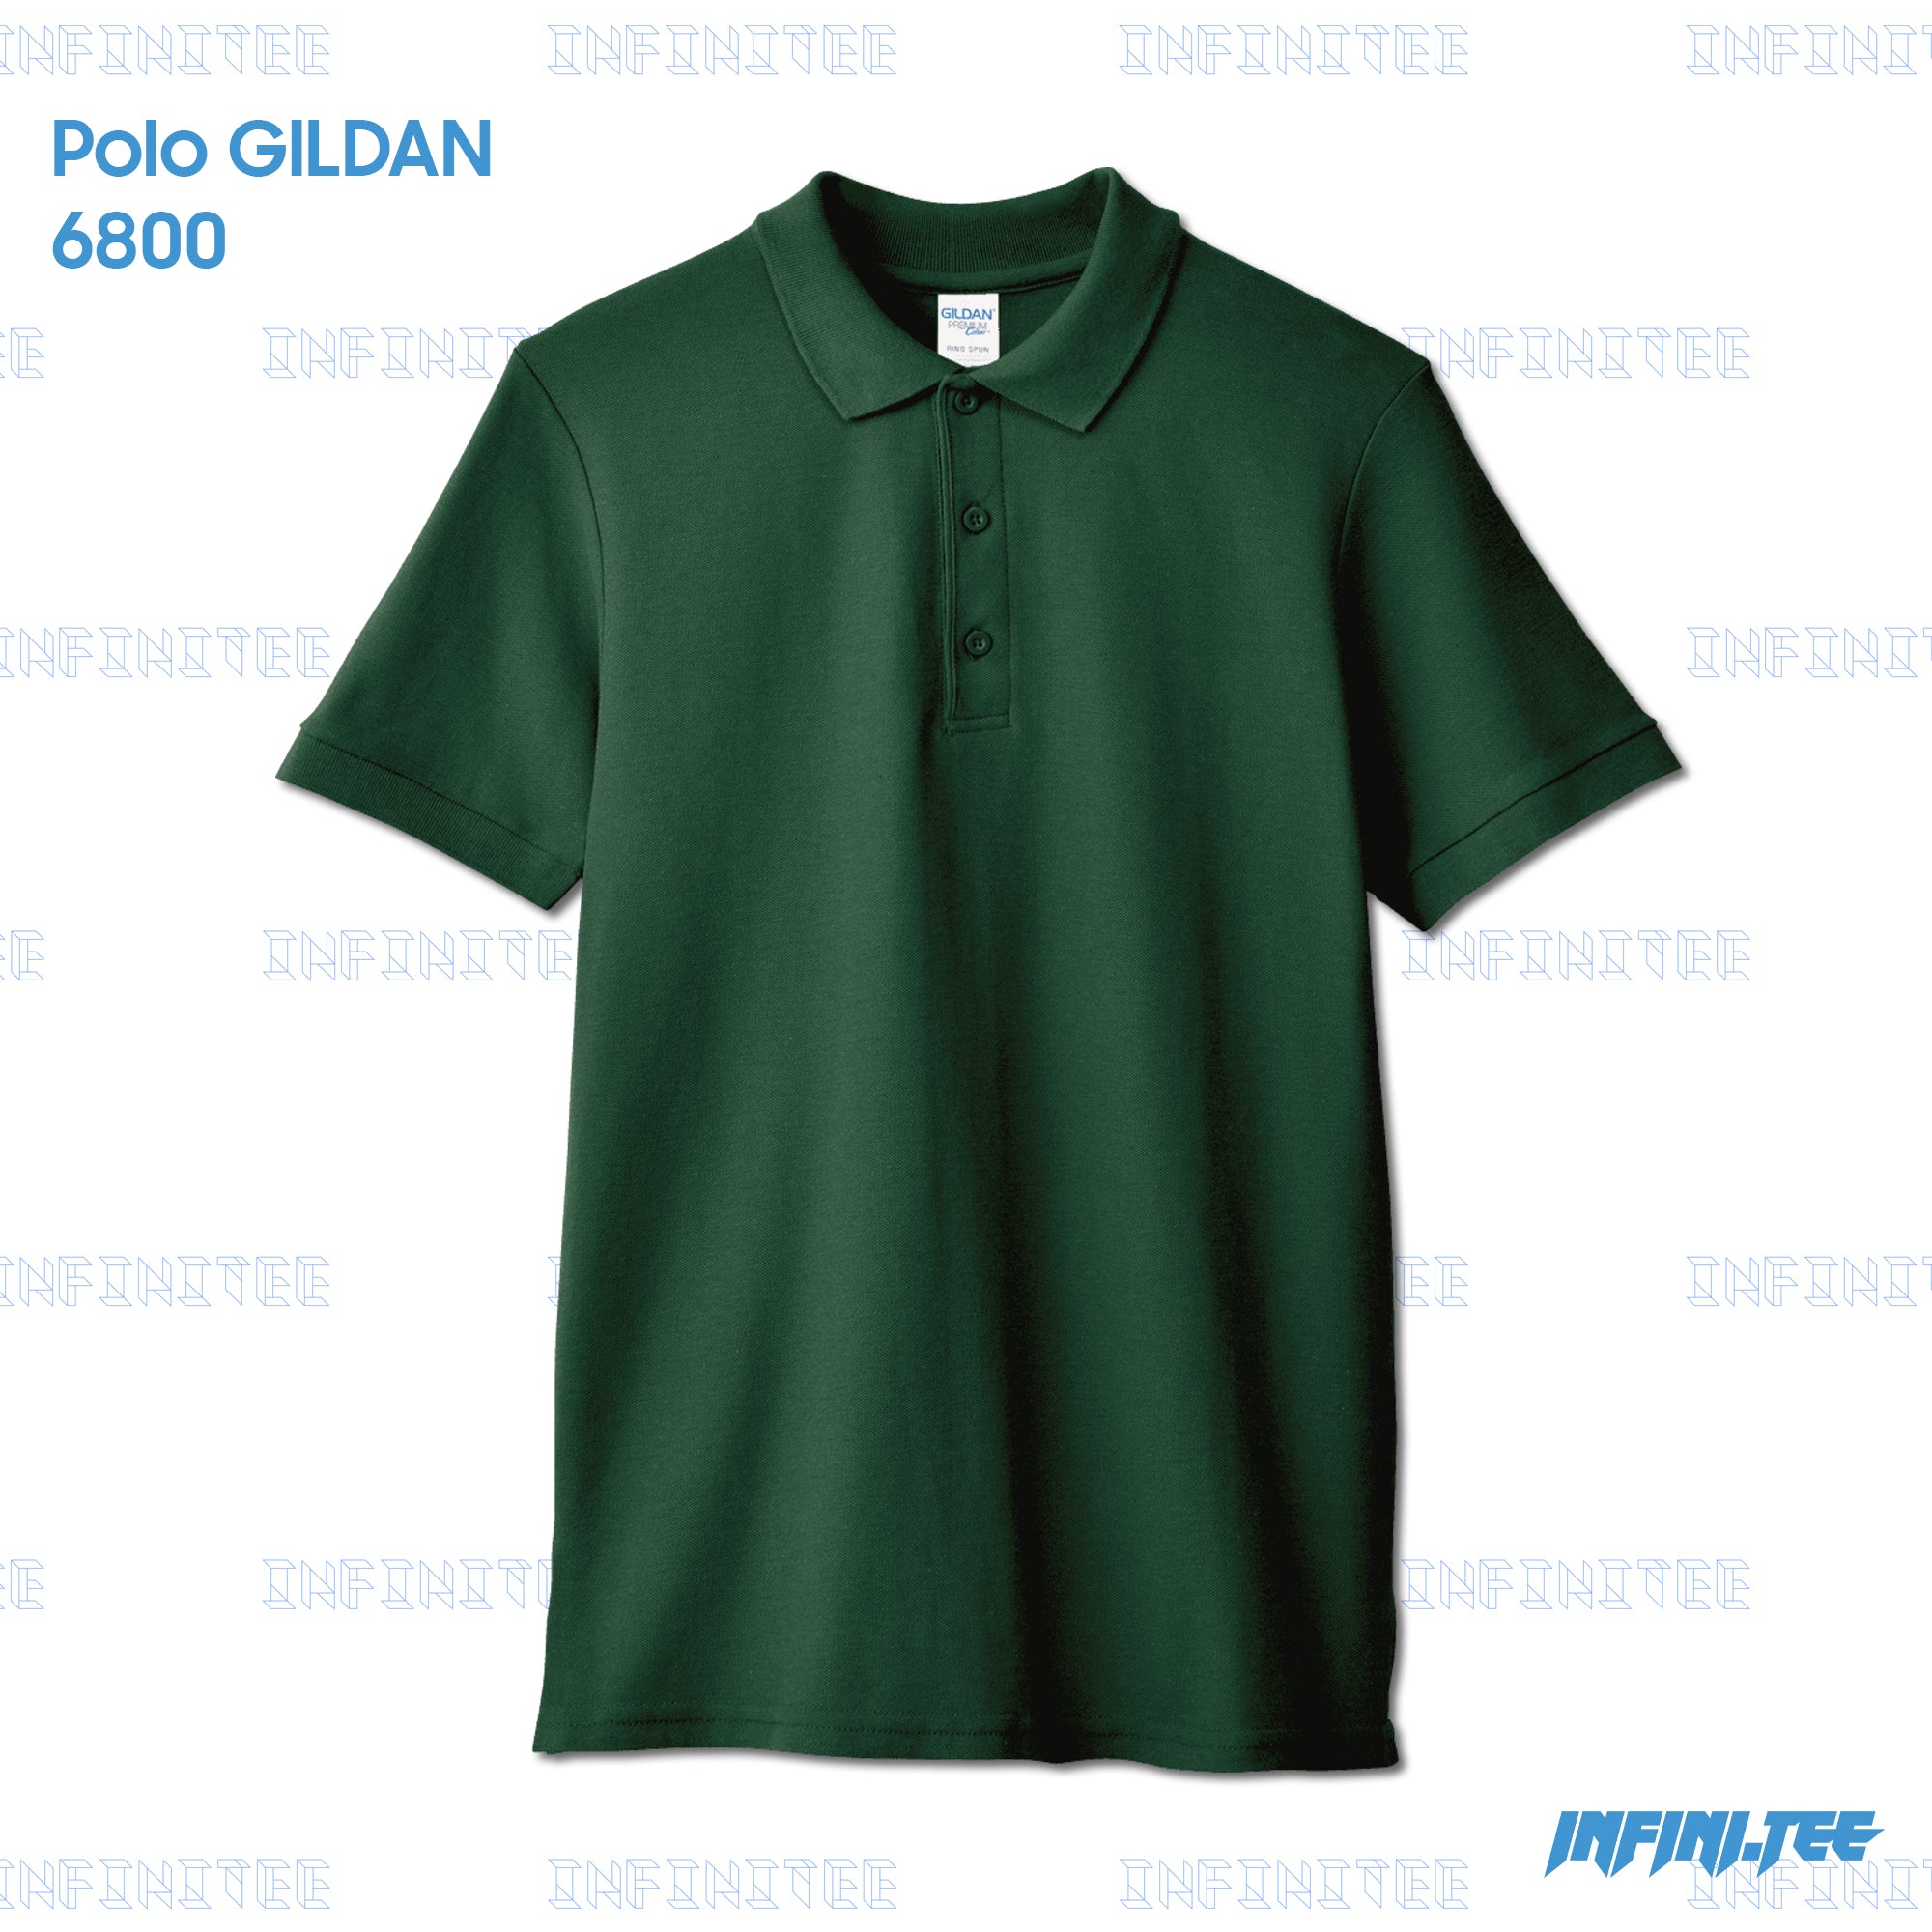 POLO 6800 GILDAN - FOREST GREEN